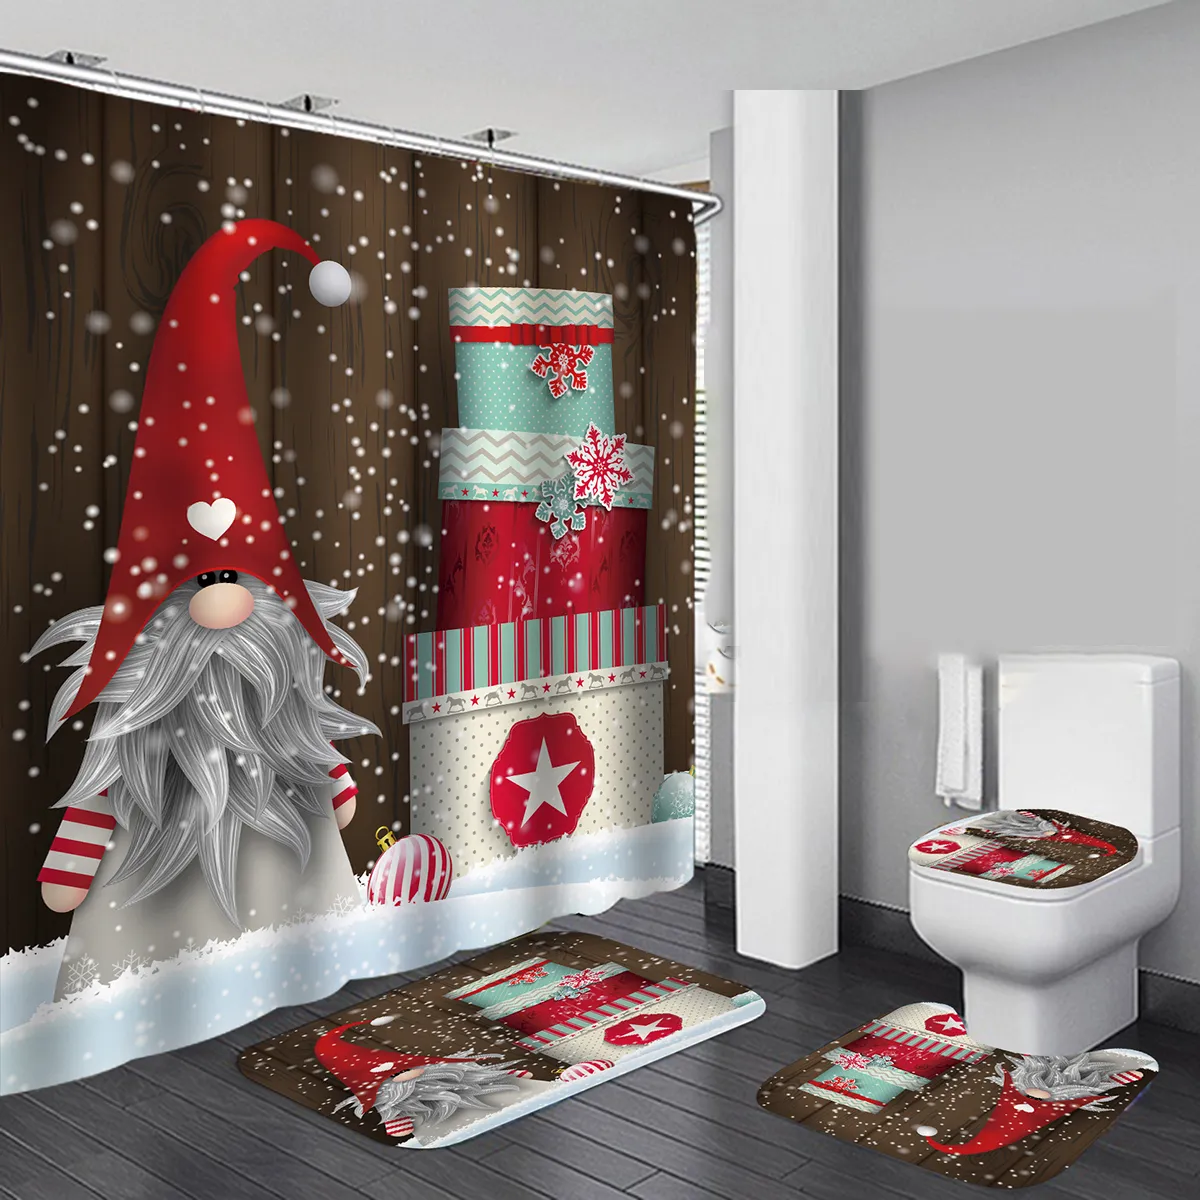 Merry Christmas impermeável banho cortina de chuveiro de Natal Papai Noel Banho esteira tampa tampa tampa poliéster / flanela cortina de chuveiro t200102